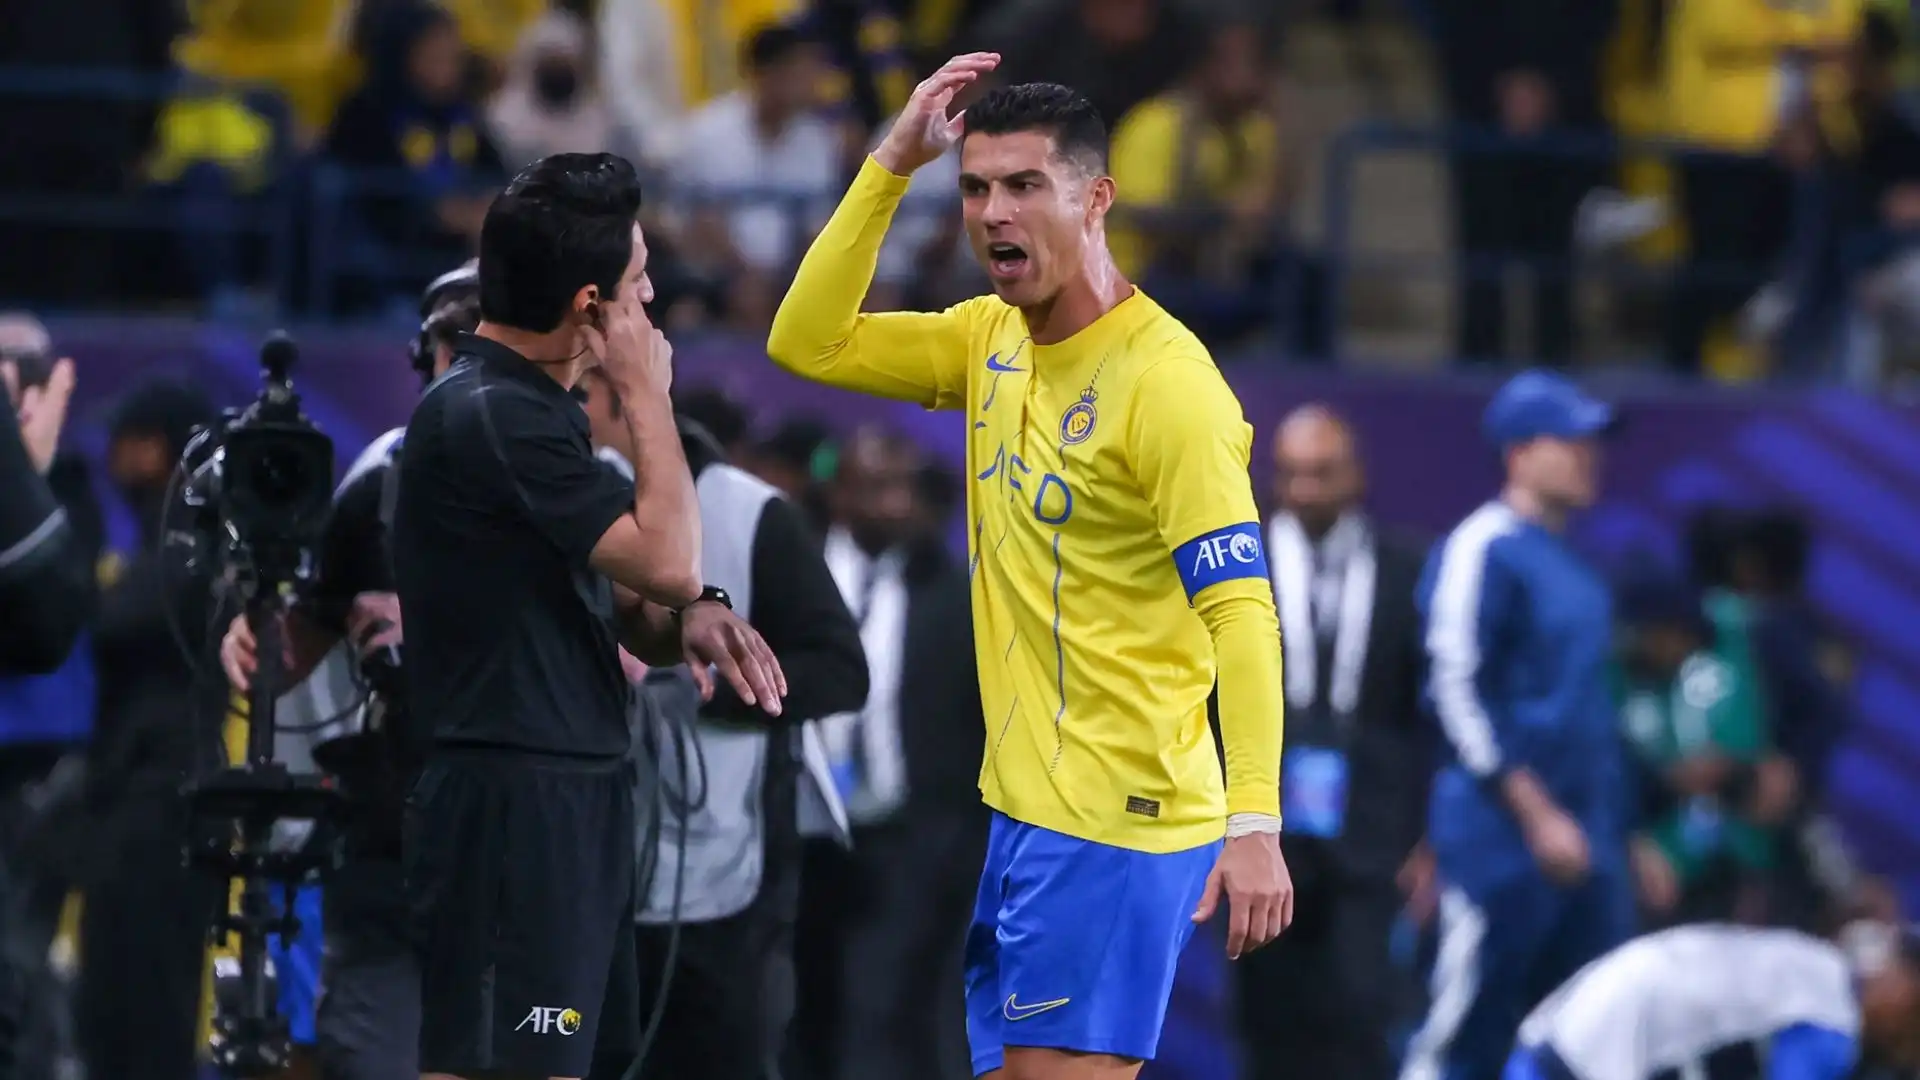 Ora per Cristiano Ronaldo e l'Al-Nassr non resta che sperare nella rimonta nel campionato saudita